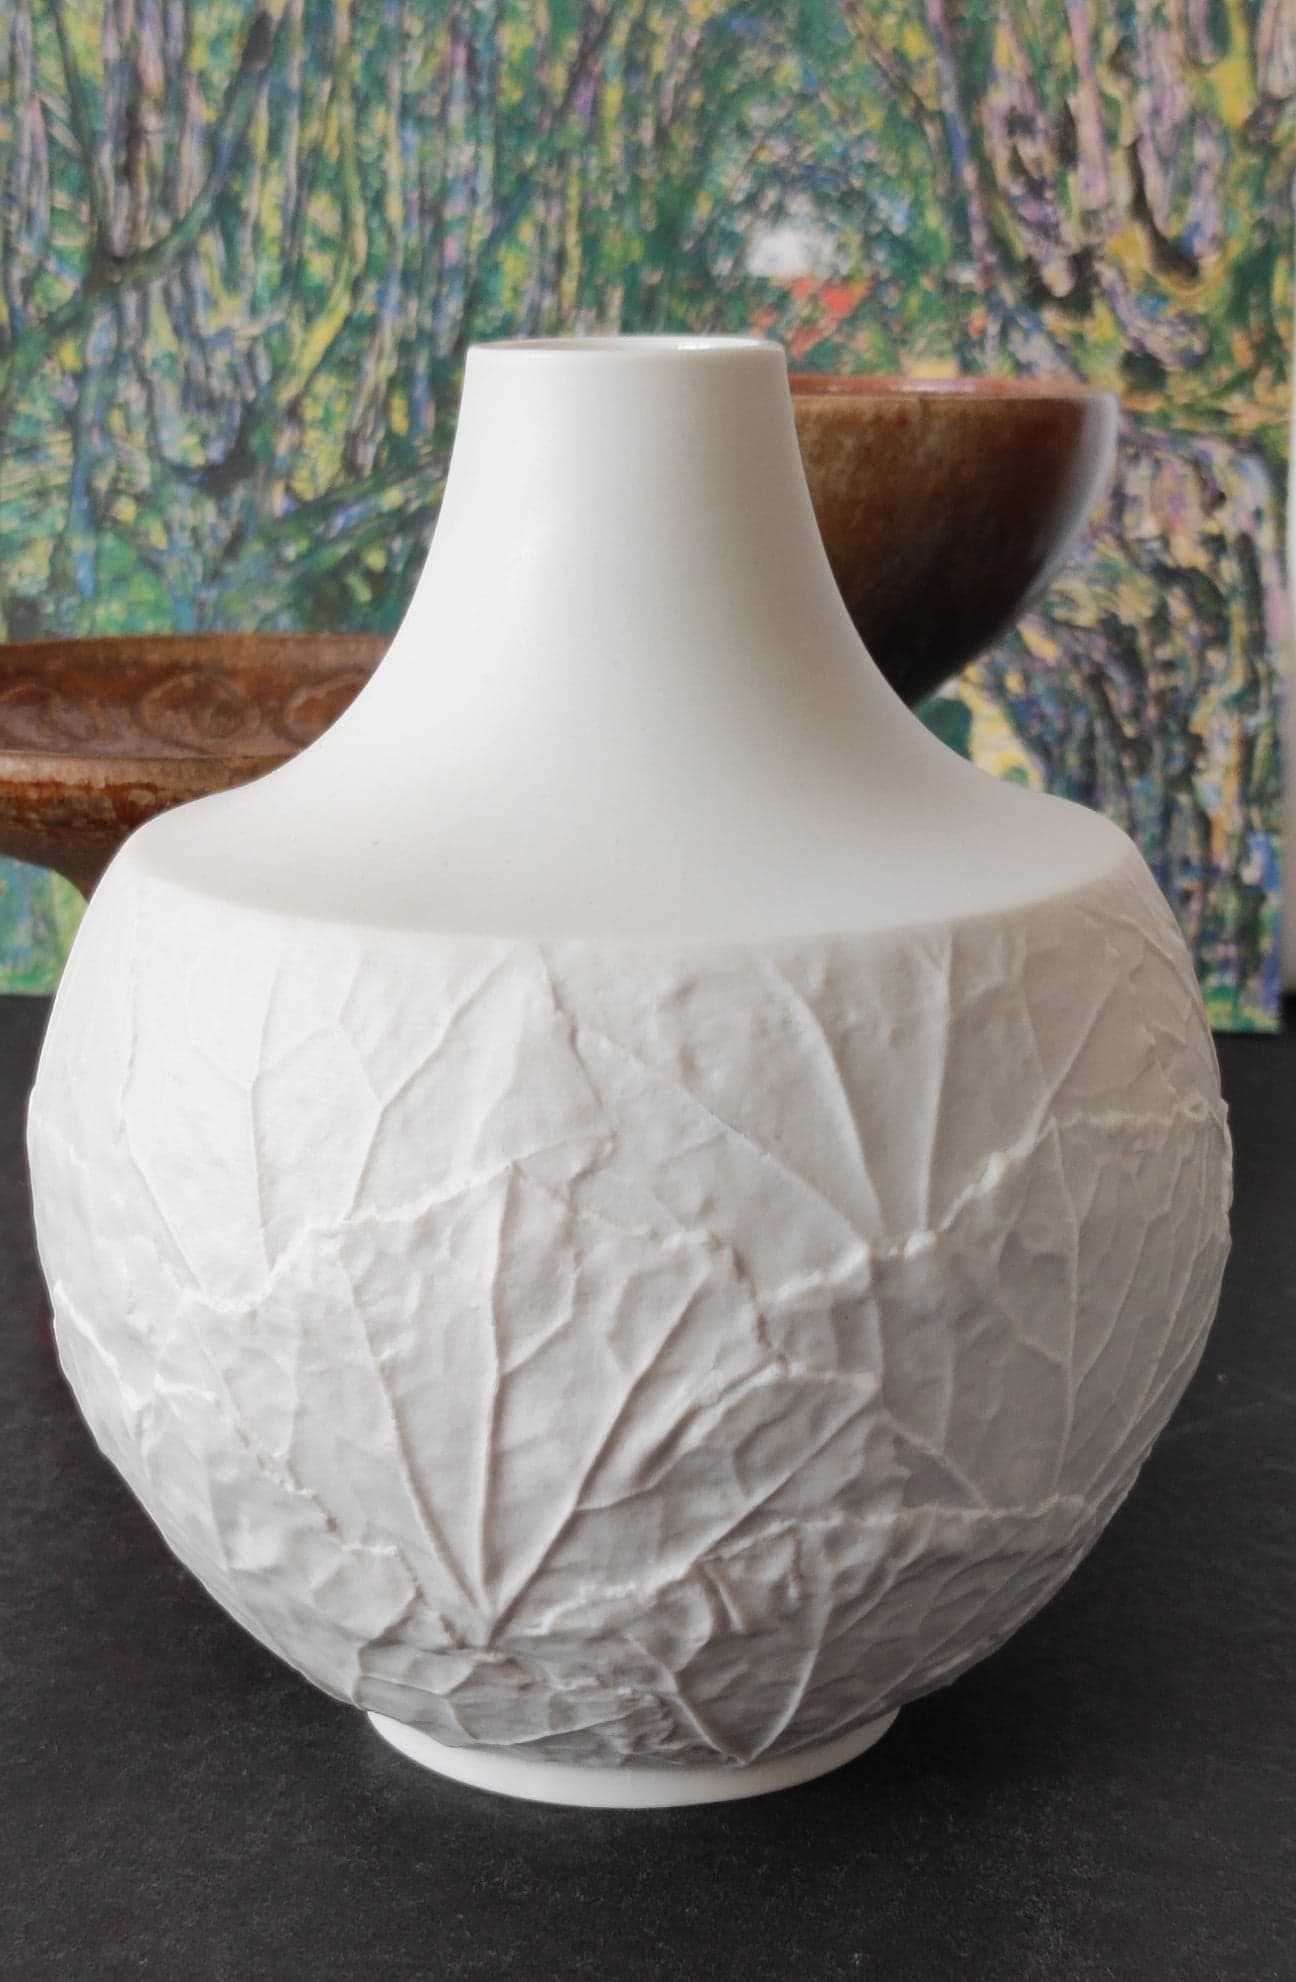 Stara porcelana biskwit modernistyczny wazon Heirich Selb 1956 Design